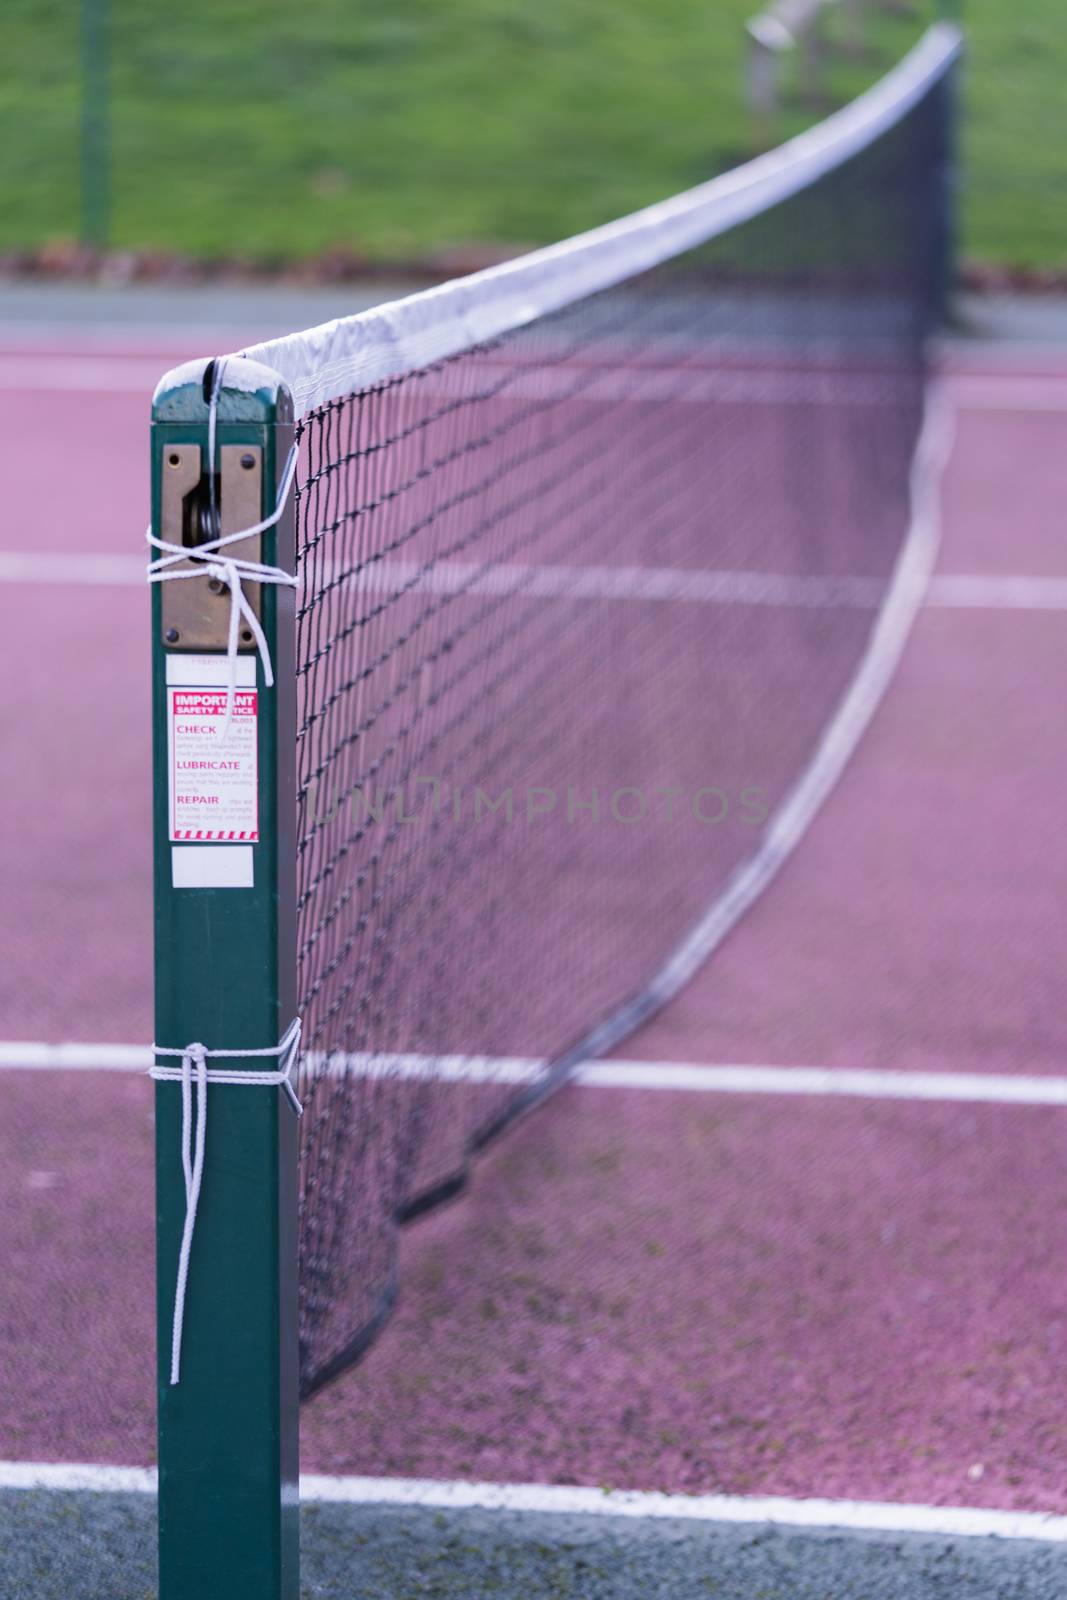 Tennis Court Netting by samULvisuals